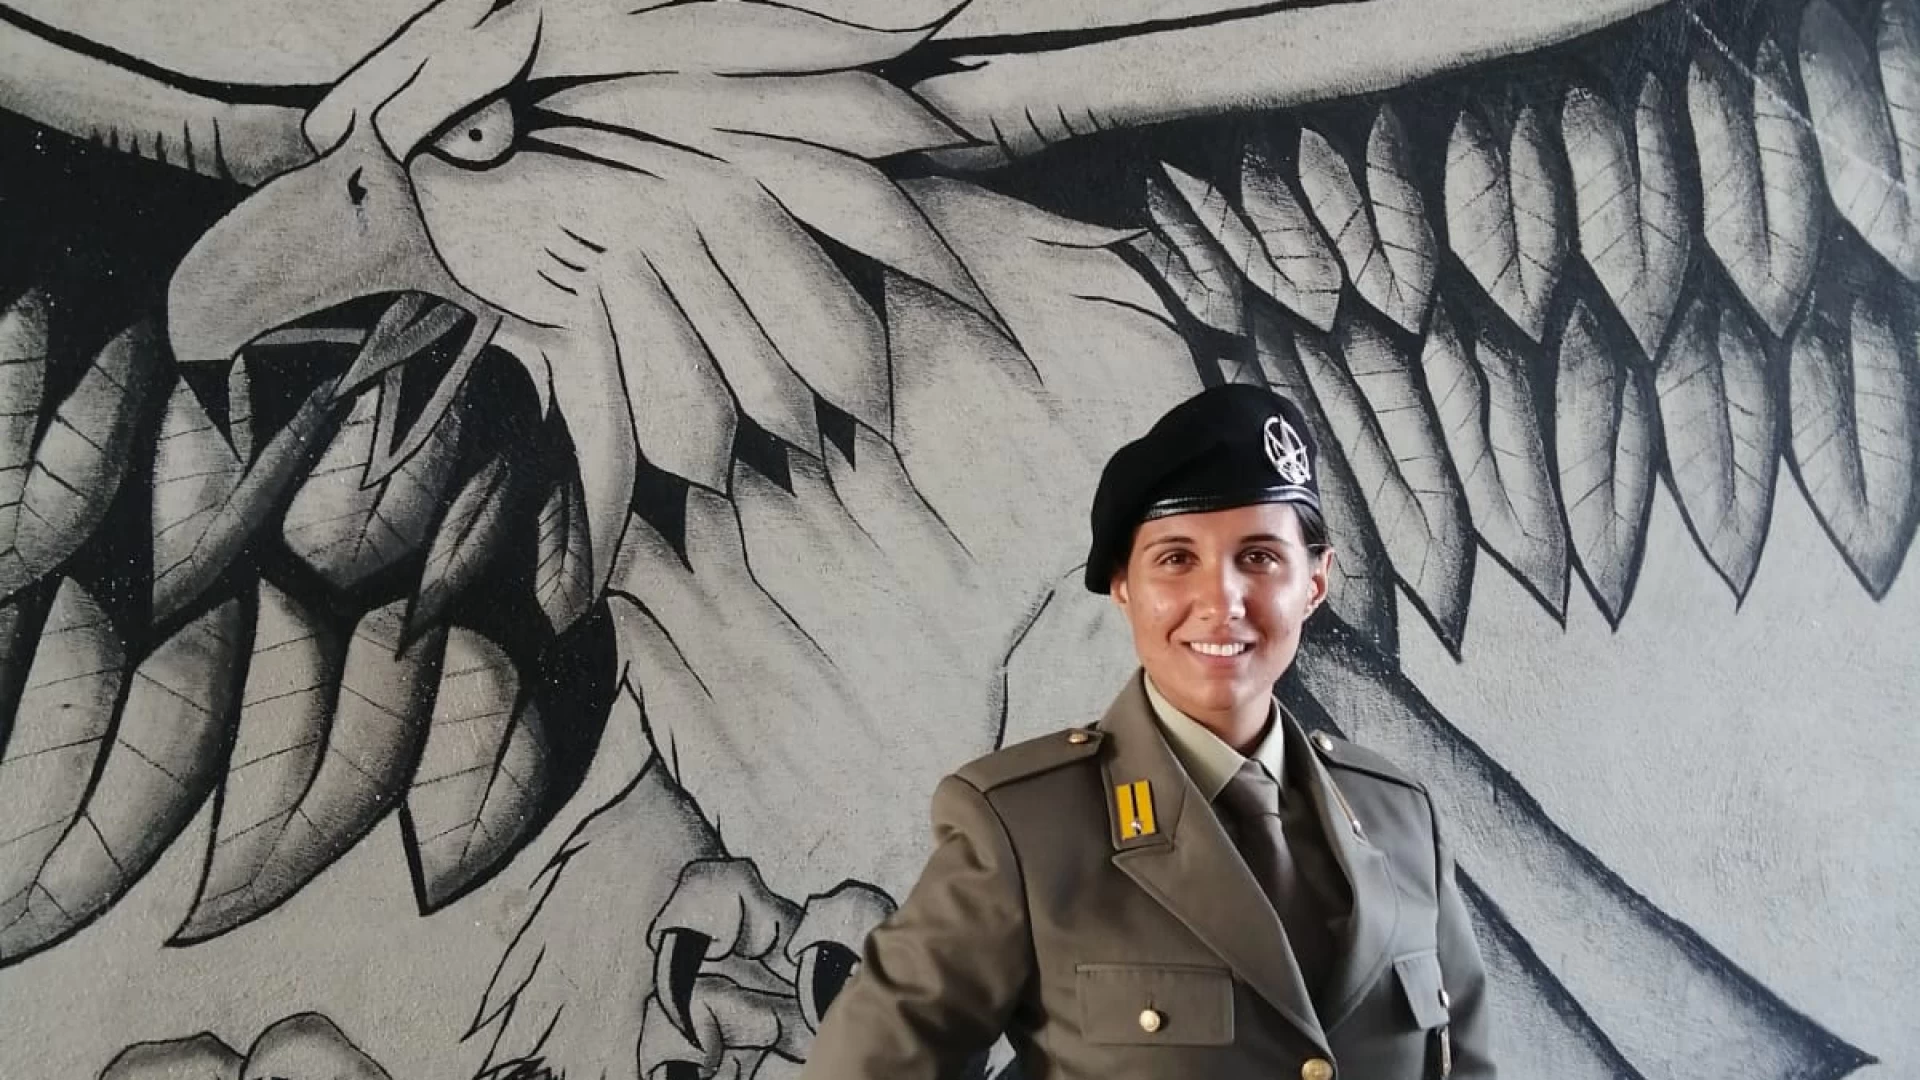 L’Angolo degli Auguri: festeggiamo quest’oggi il traguardo raggiunto da Romina Marilungo che ha raggiunto il suo sogno di entrare in Esercito.